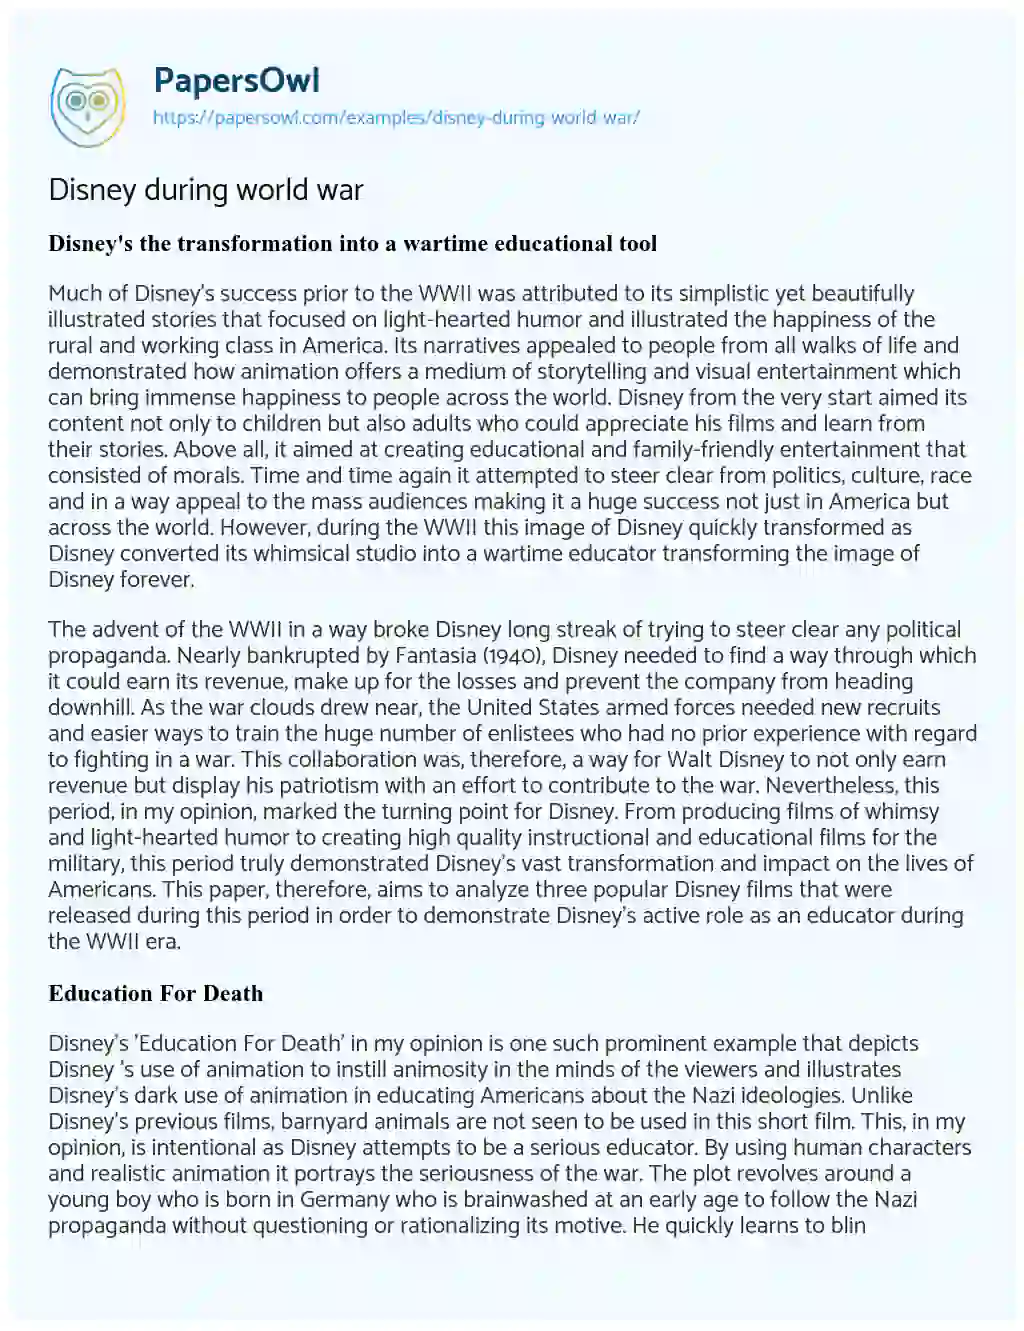 Disney during World War essay